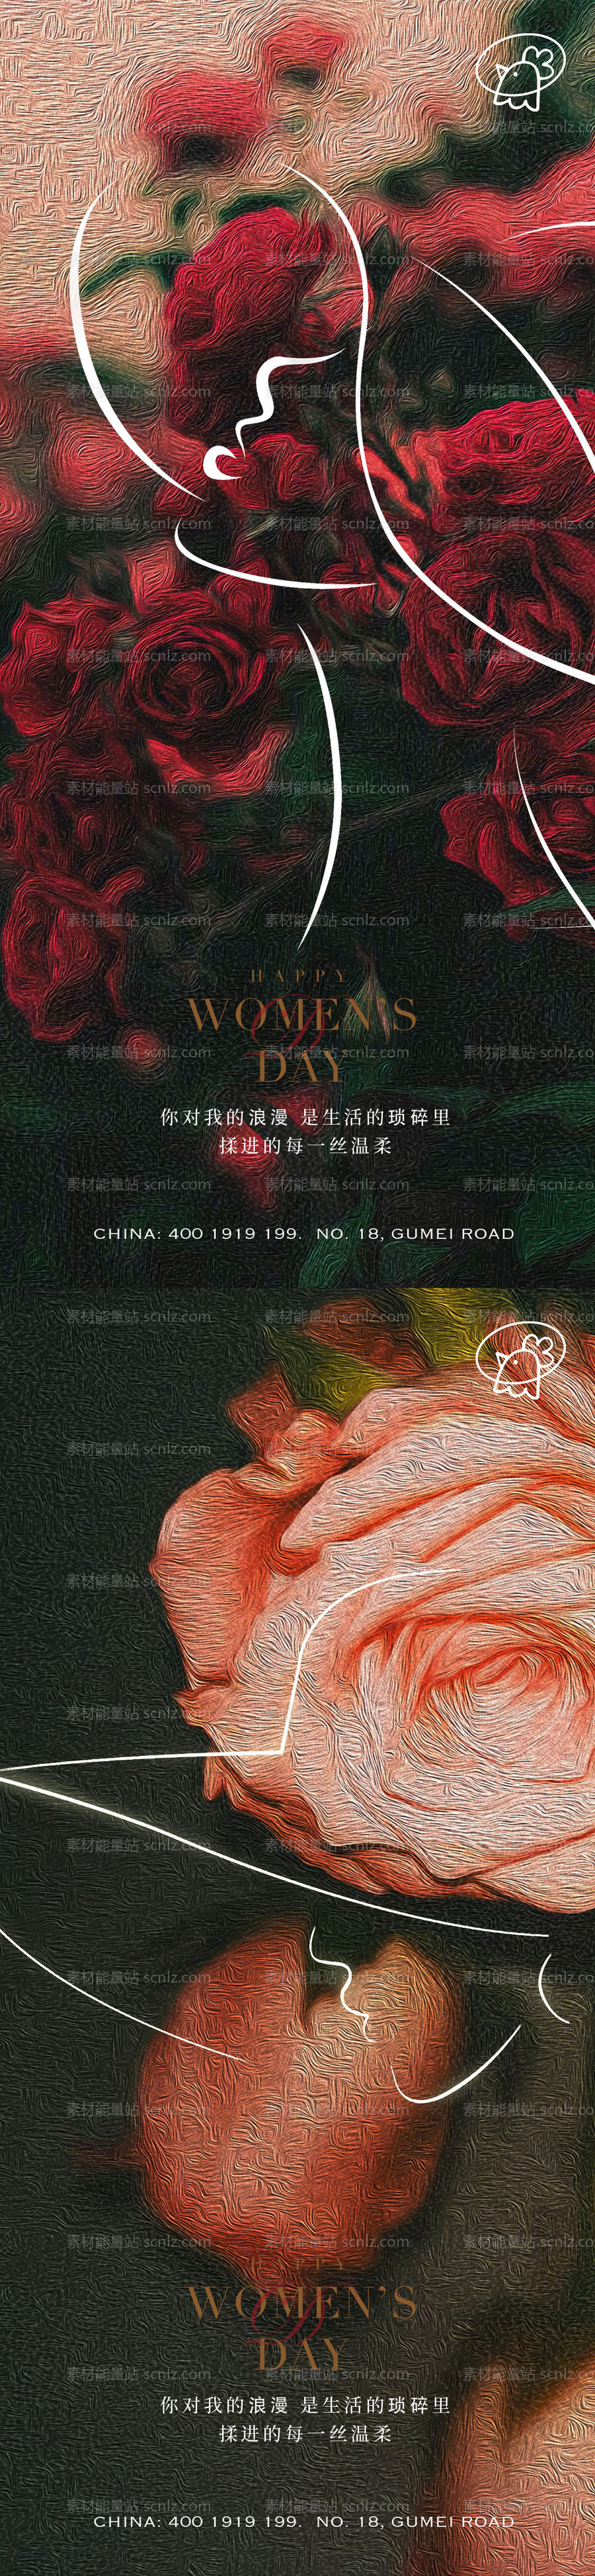 素材能量站-38玫瑰女神节海报